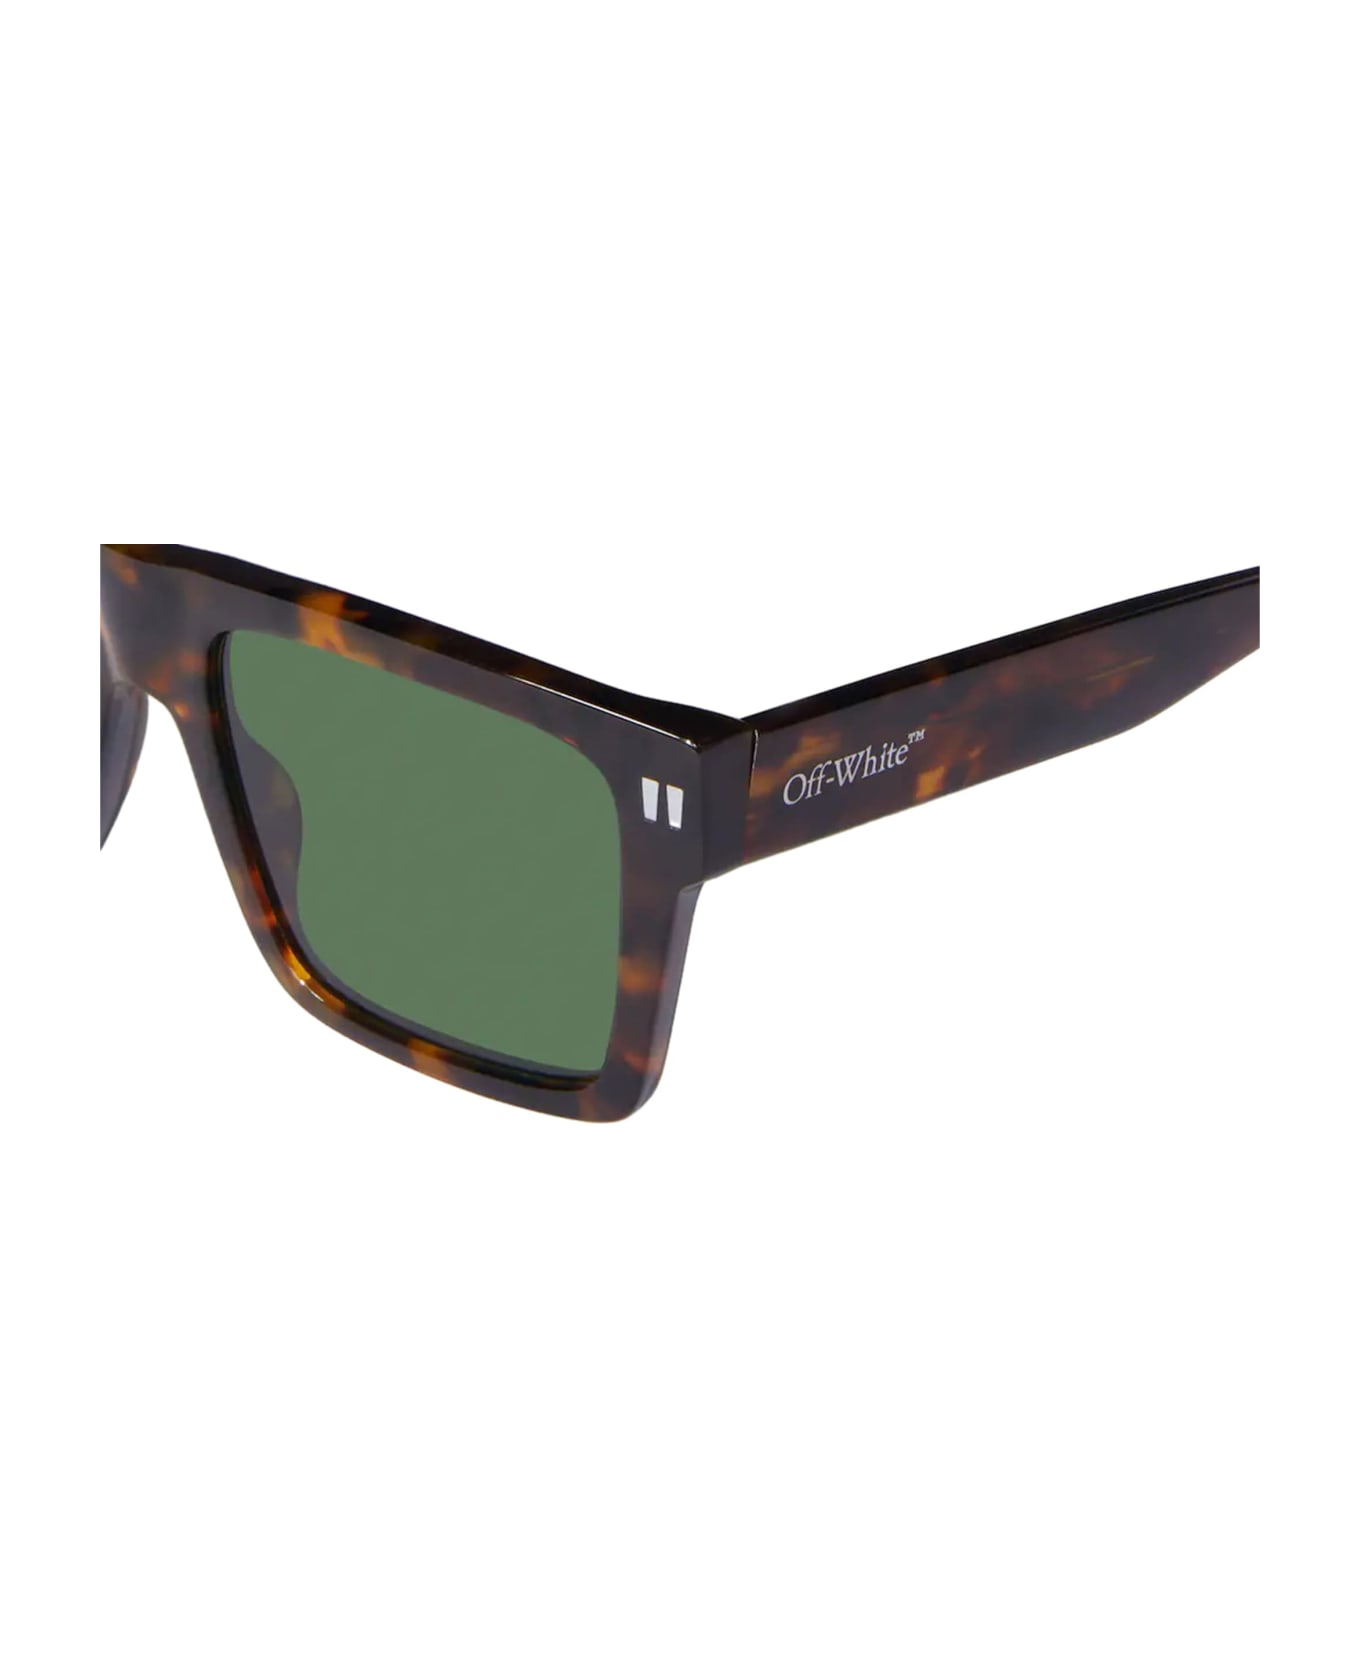 Off-White Lawton - Havana / Green Sunglasses - Havana サングラス